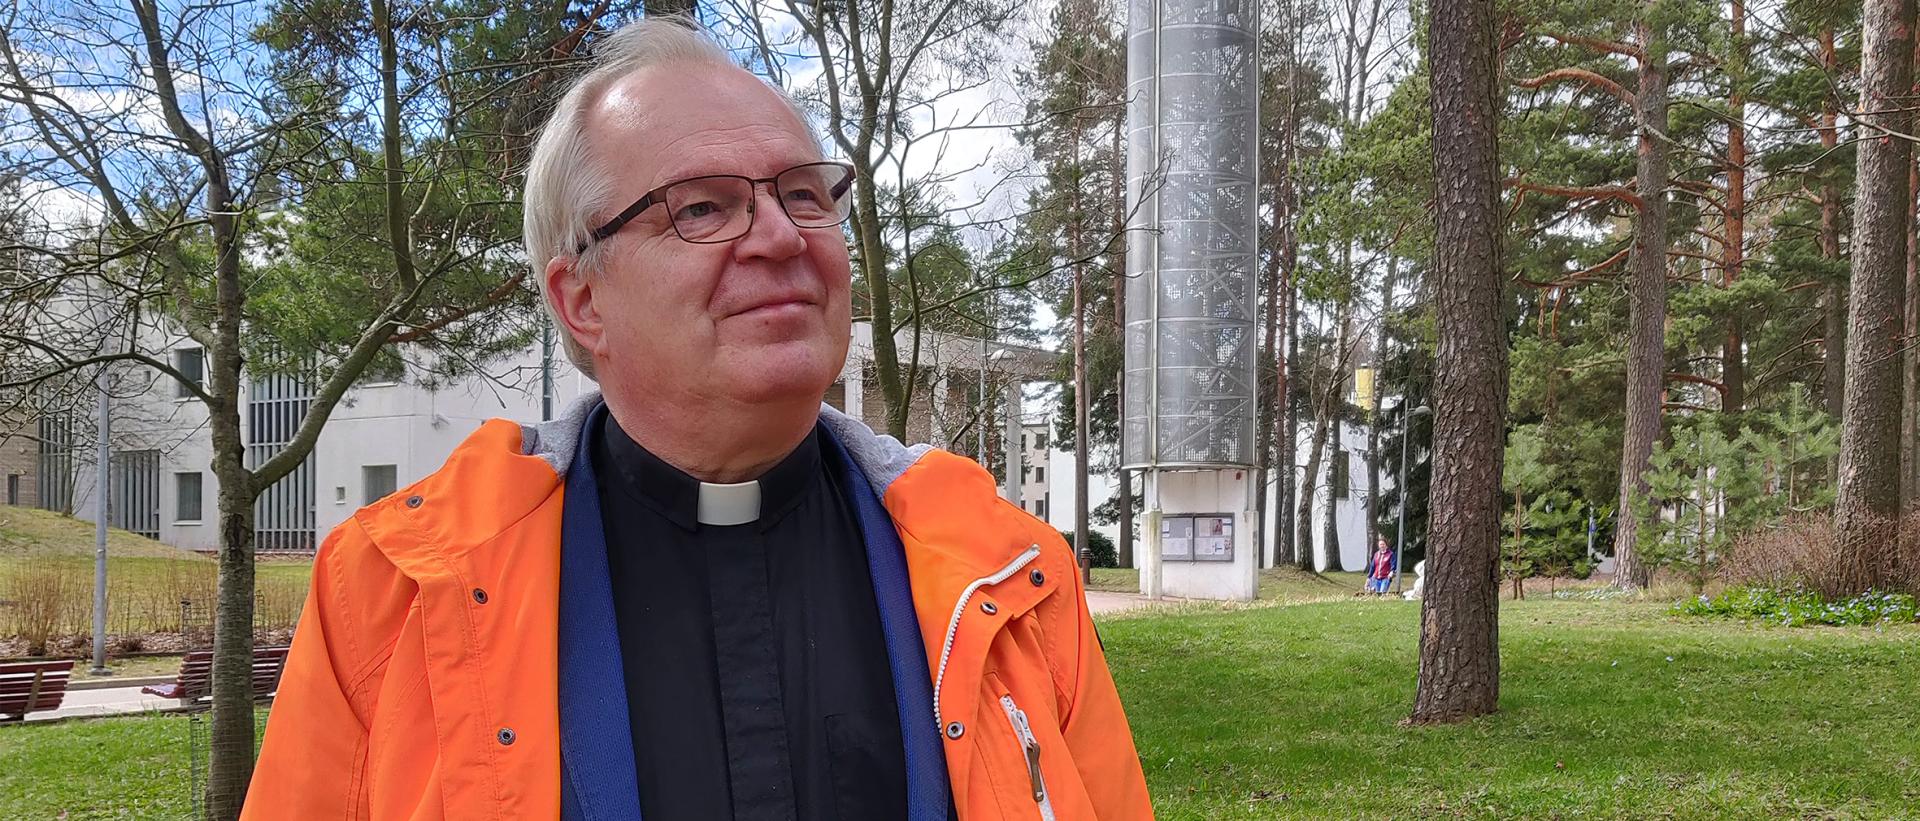 Kirkkoherra Markku Rautiainen kuvattuna Myllypuron kirkko taustanaan keväällä